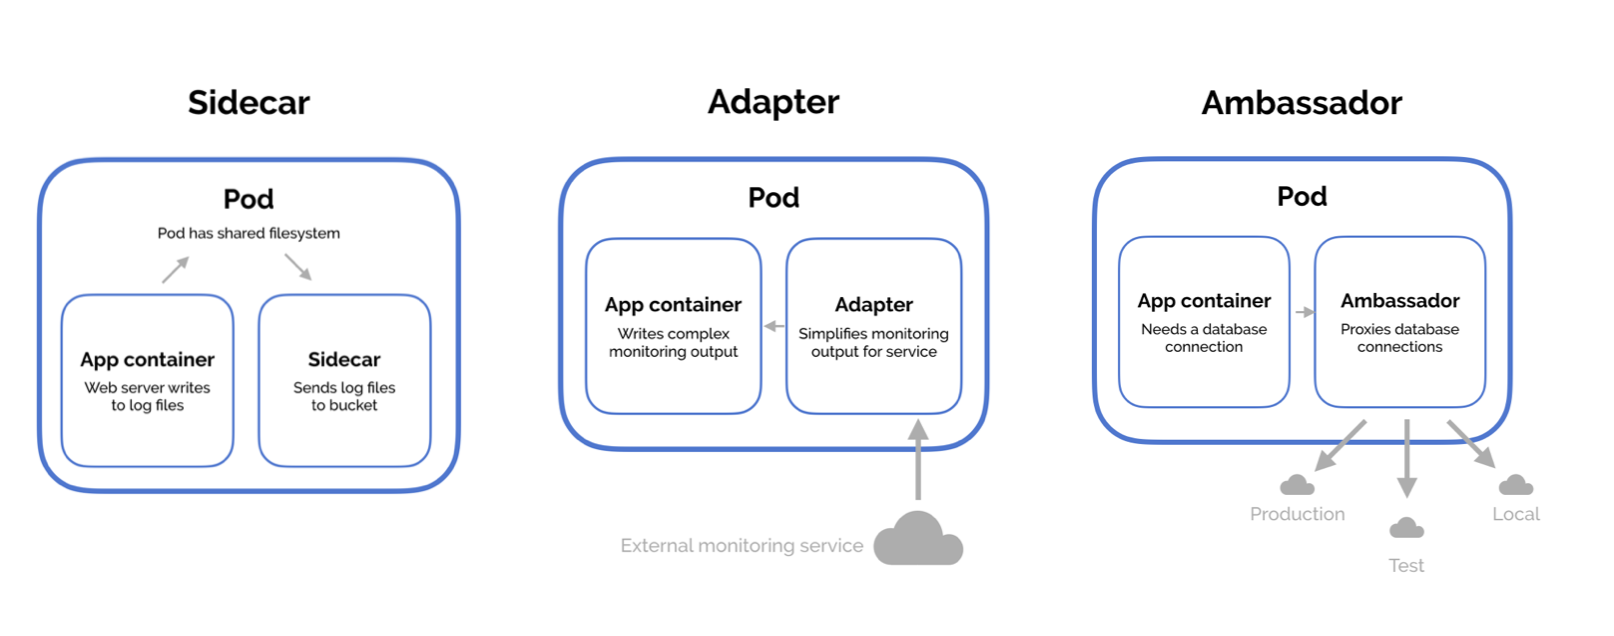 멀티 컨테이너 파드의 대표적인 디자인 패턴으로는 Sidecar, Adapter, Ambassador 등이 있다. https://matthewpalmer.net/kubernetes-app-developer/articles/multi-container-pod-design-patterns.html